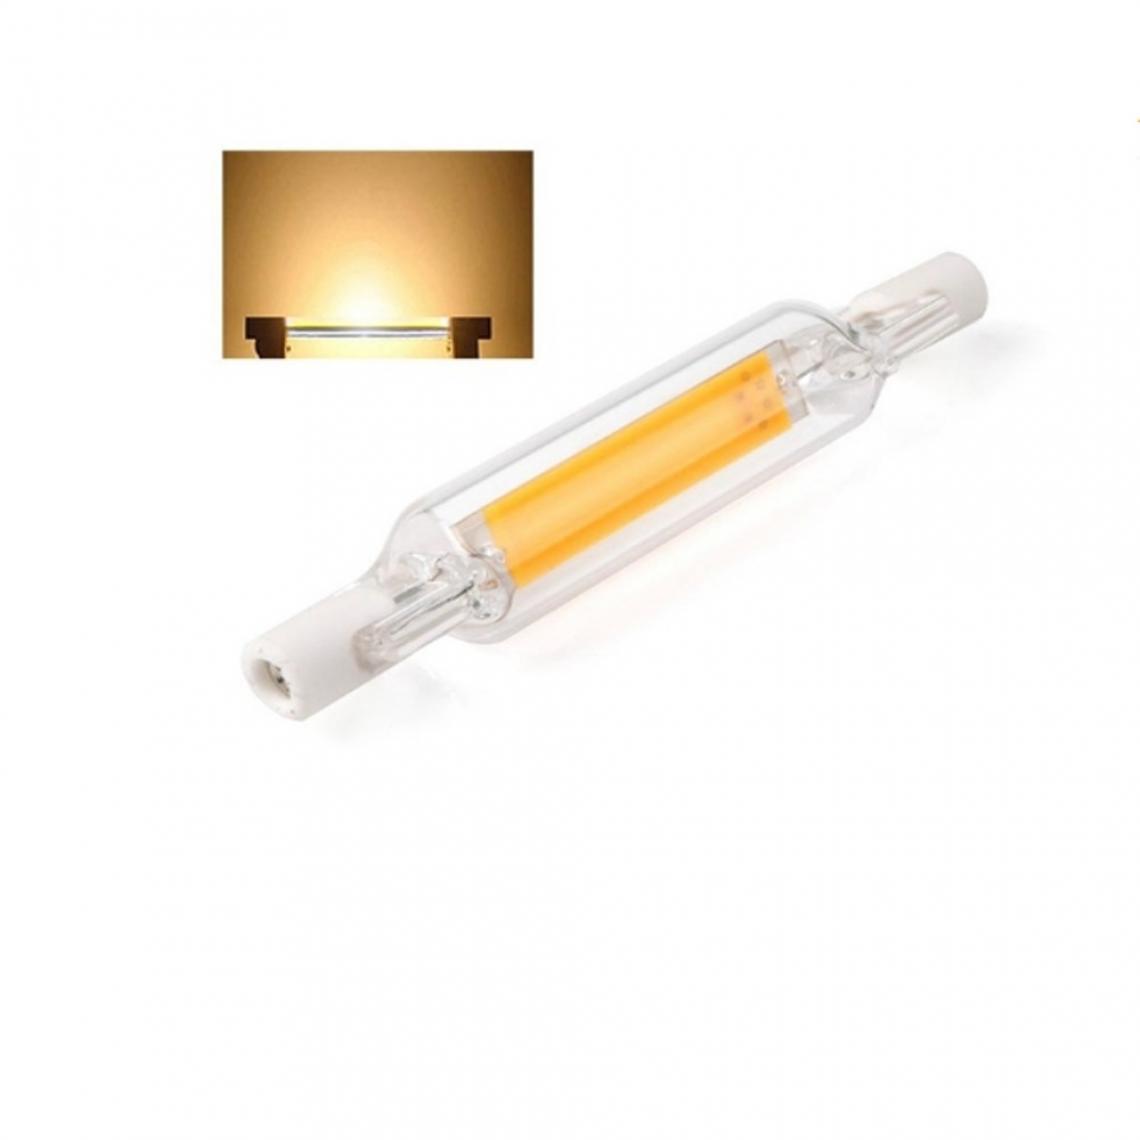 Wewoo - Tube en verre d'ampoule LED R7S 5W pour remplacer l'ampoule halogènelongueur de la lampe 78 mmCA 110v blanc chaud - Tubes et néons